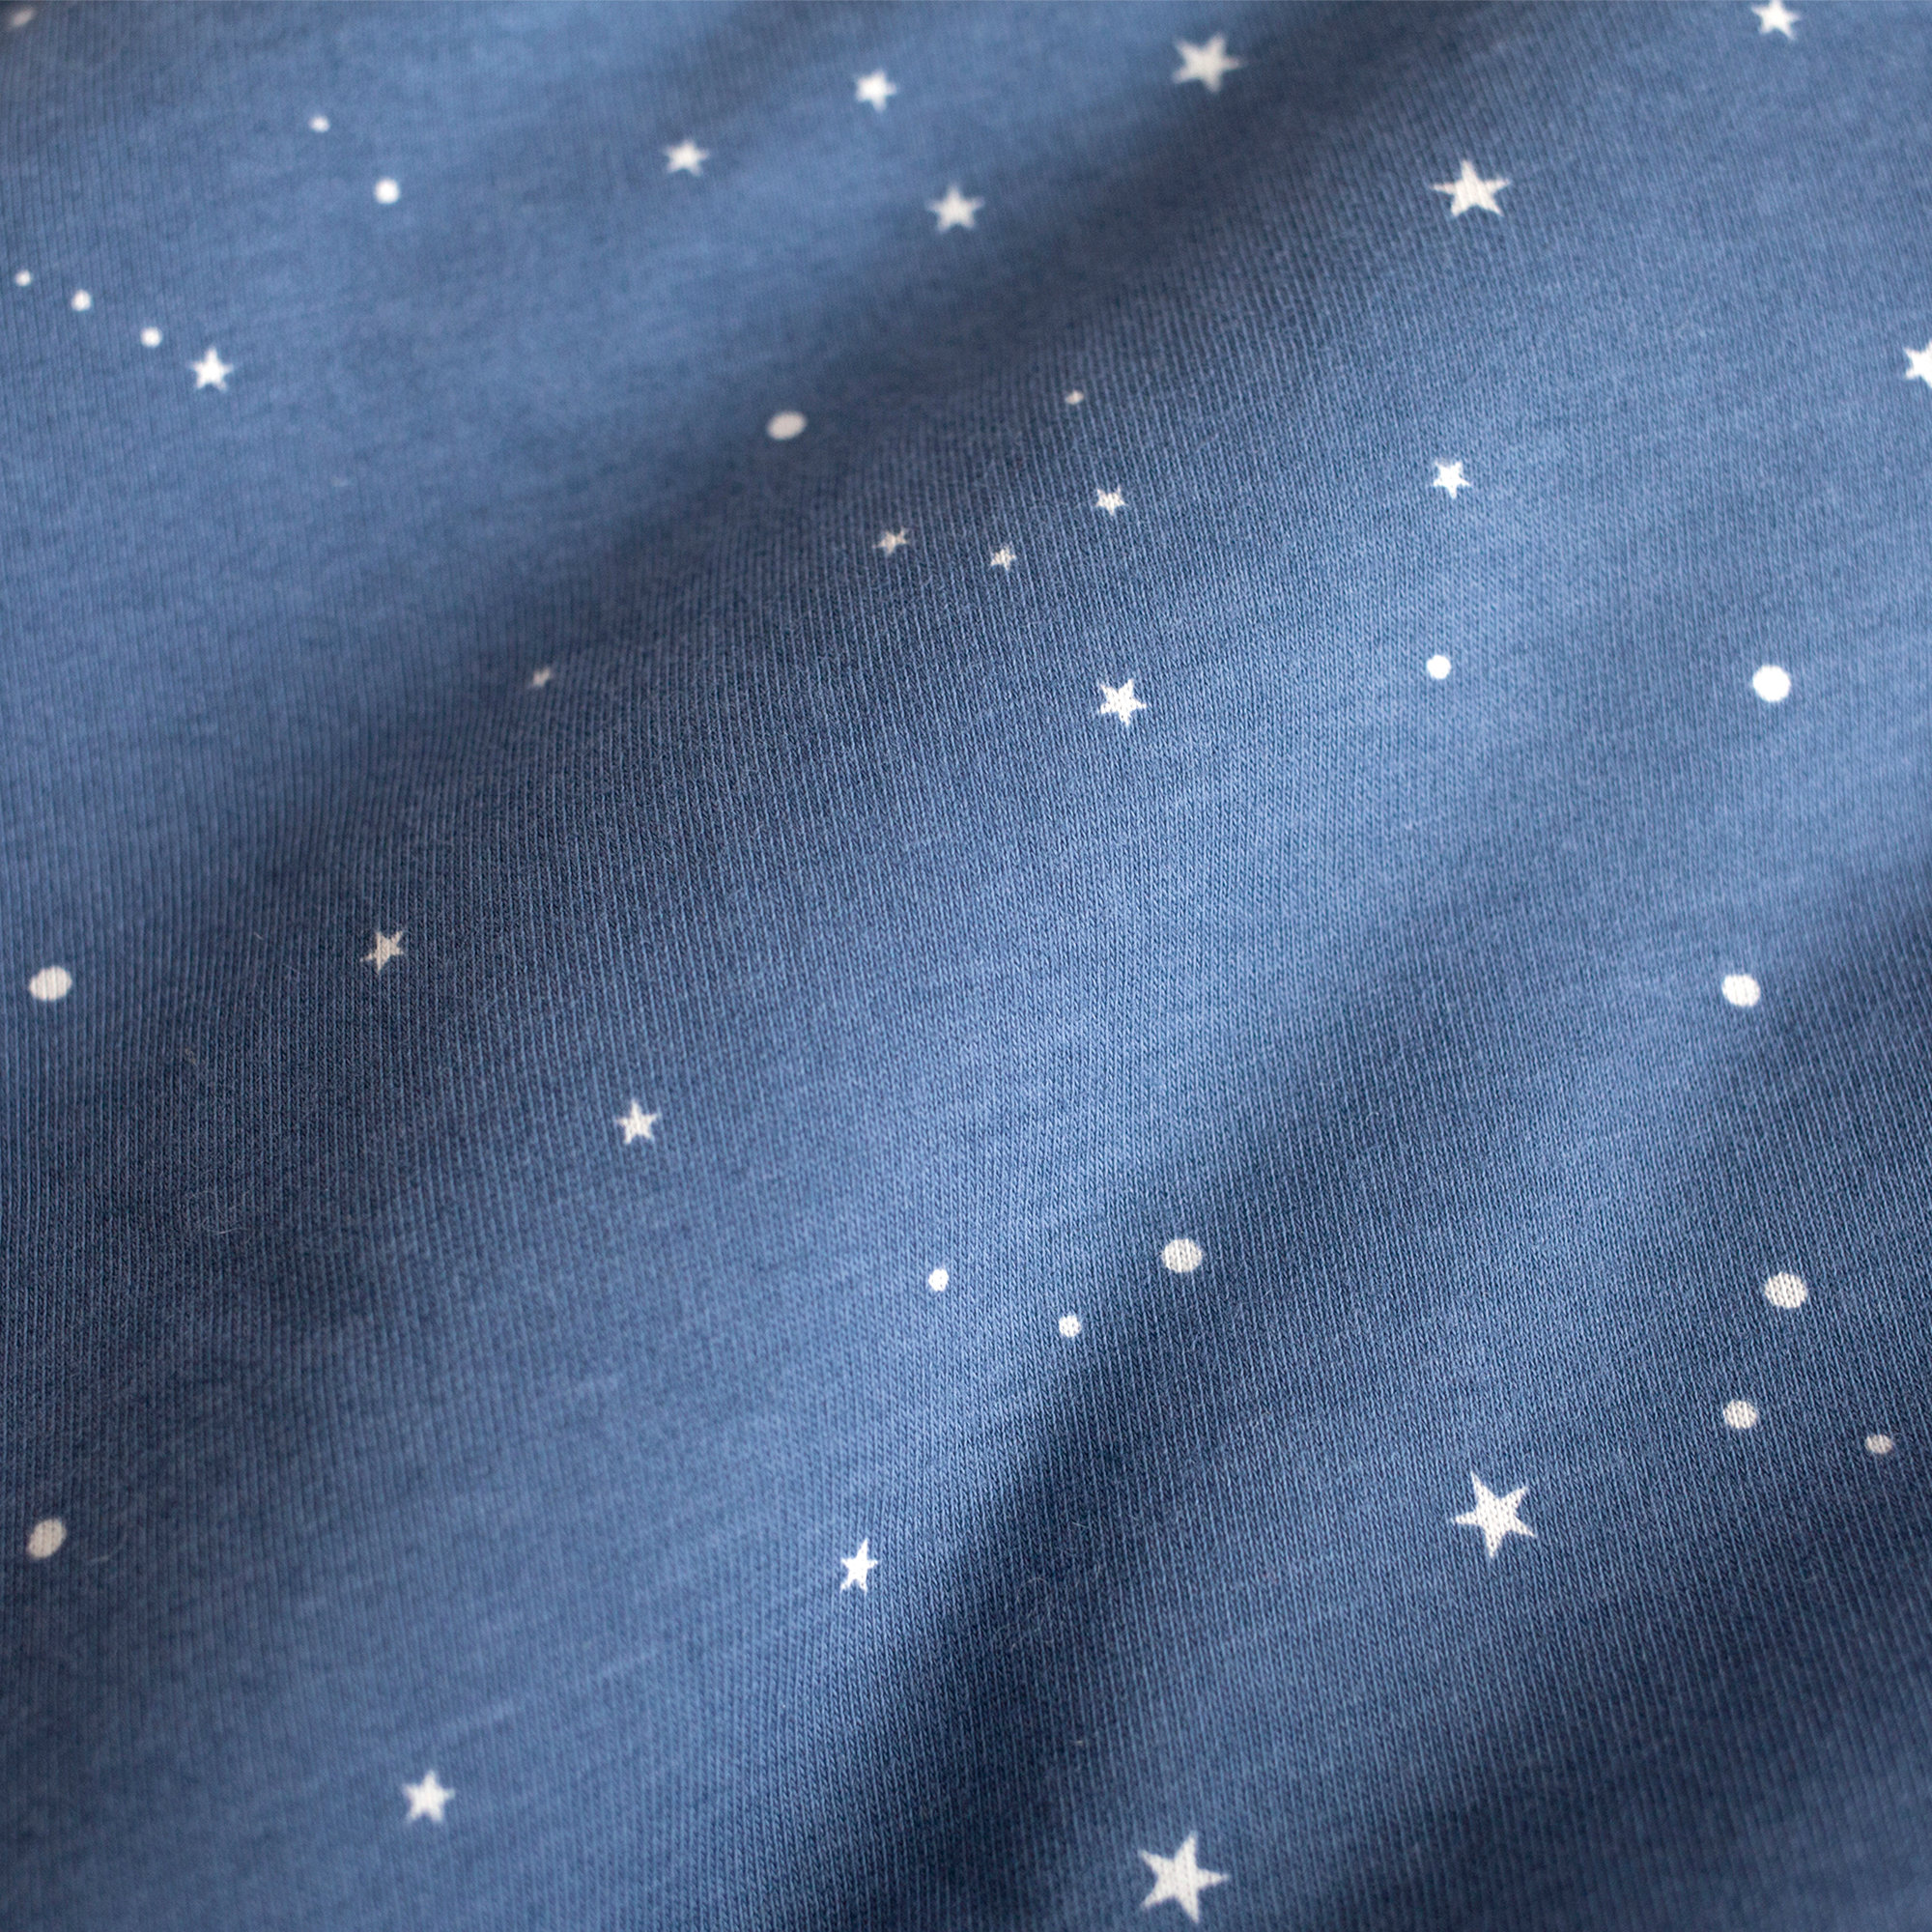 Nestchen Laufgitter Pady jersey + jersey 75x95x28cm STARY Denim blaues kleine Stern